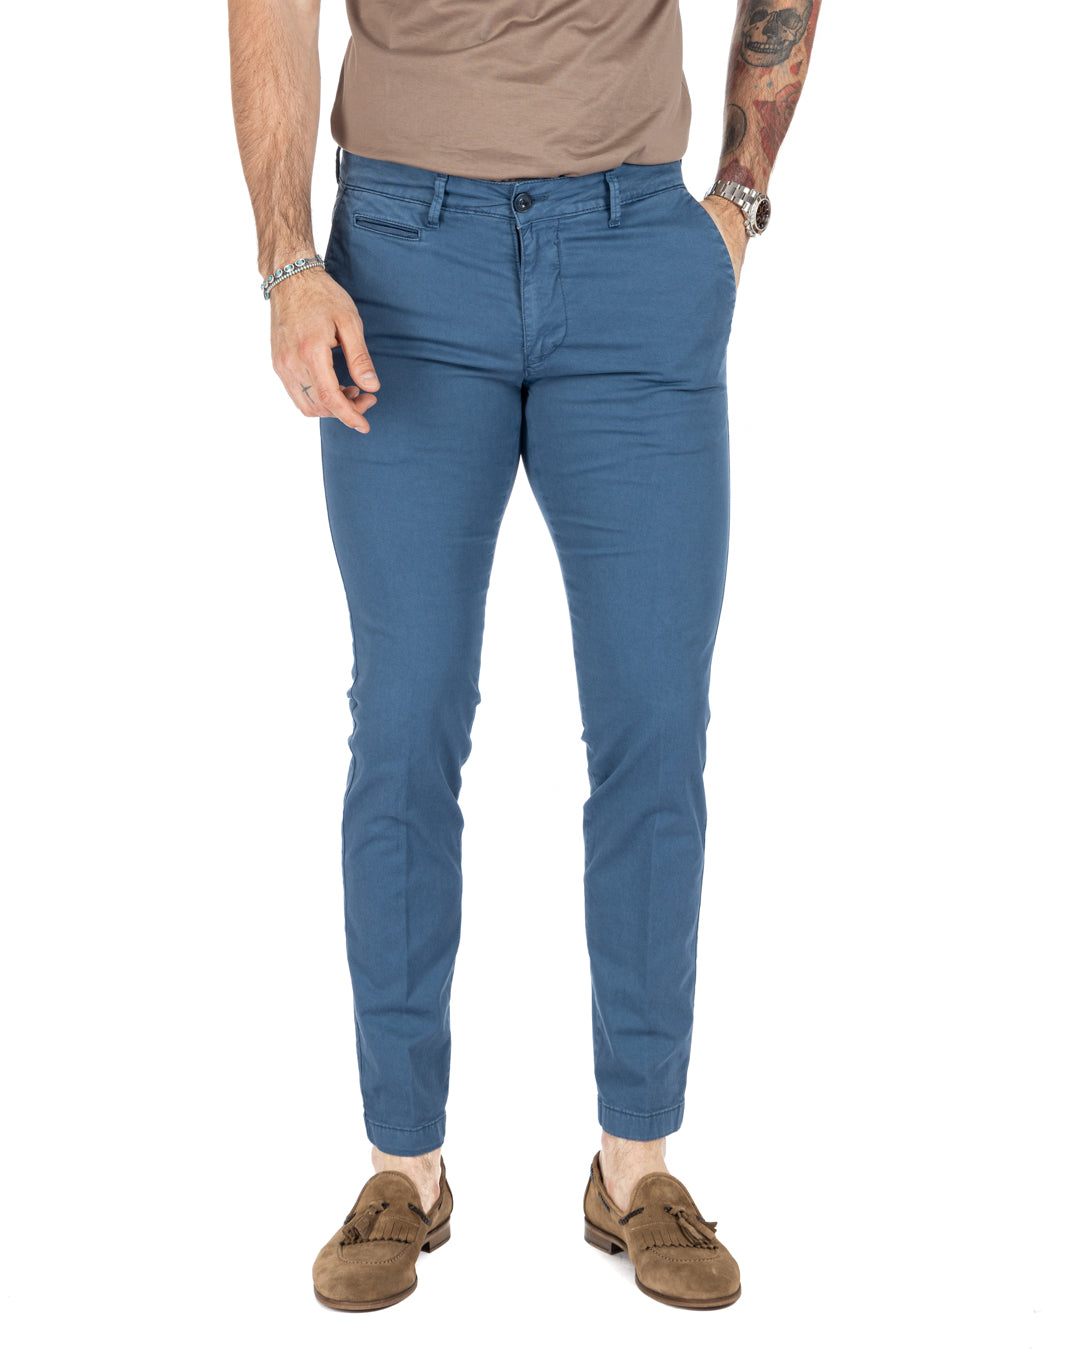 Frank - Basic indigo trousers 